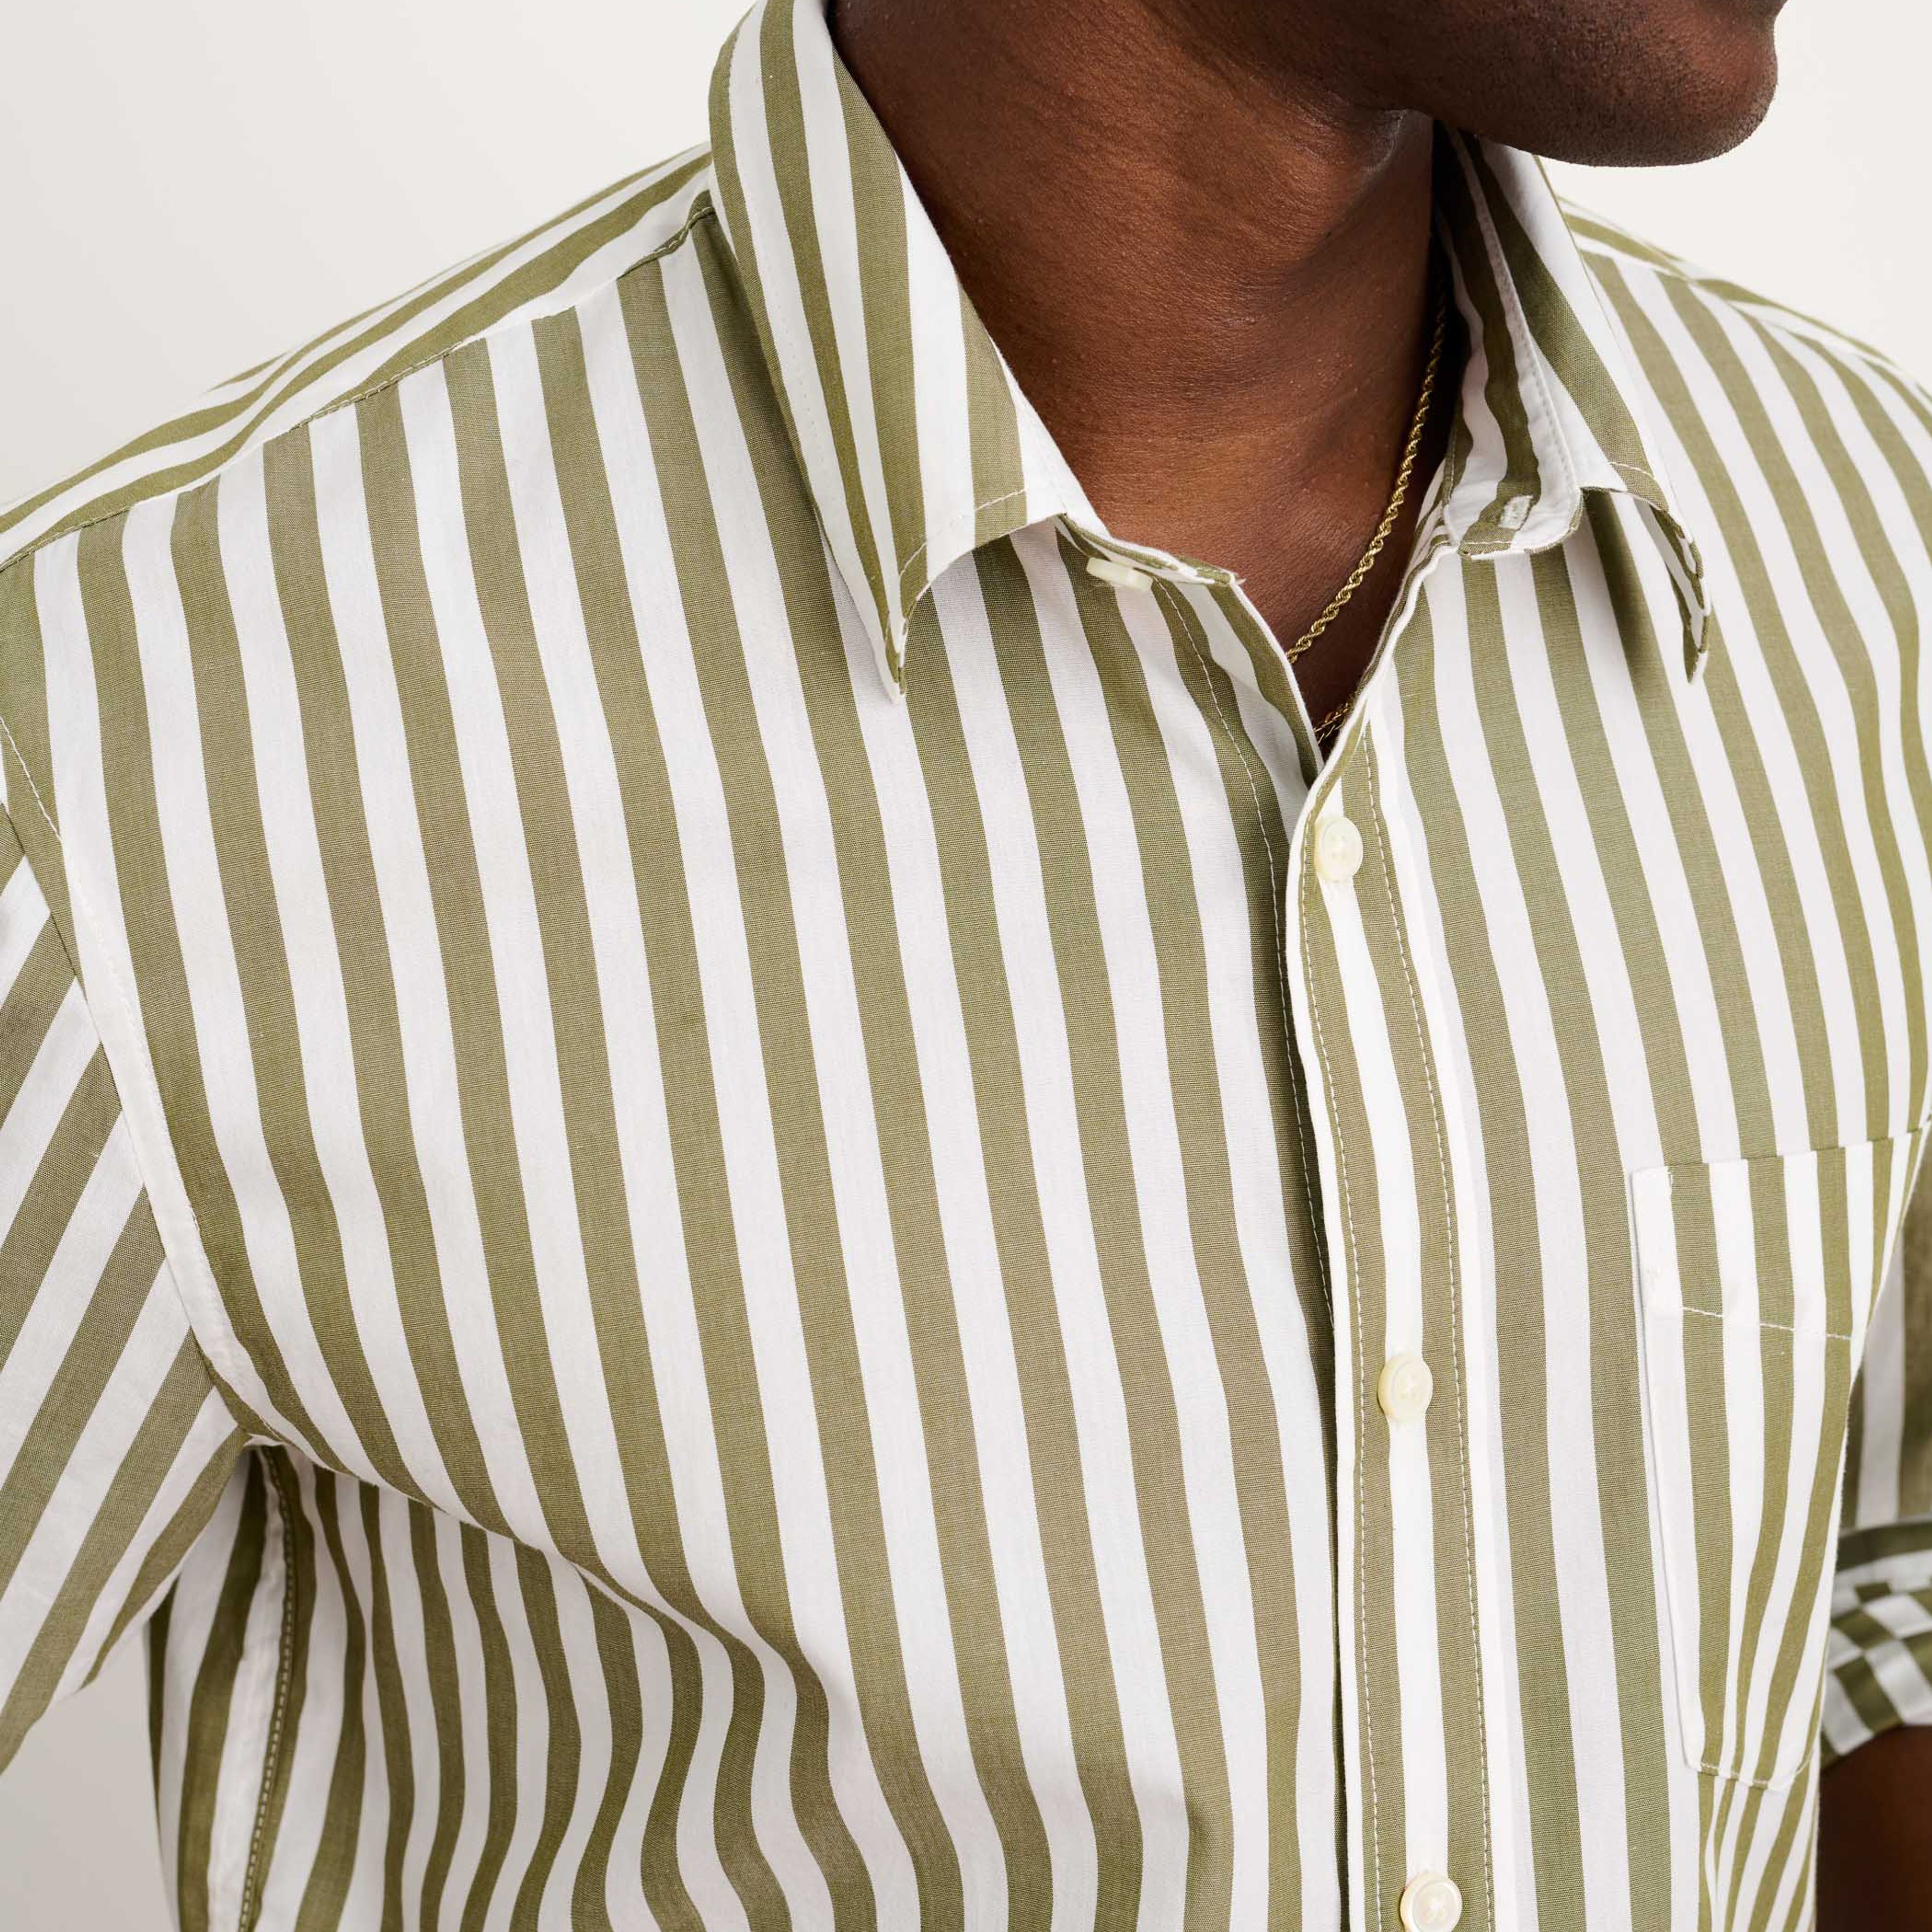 Mill Shirt in Wide Striped Cotton Poplin